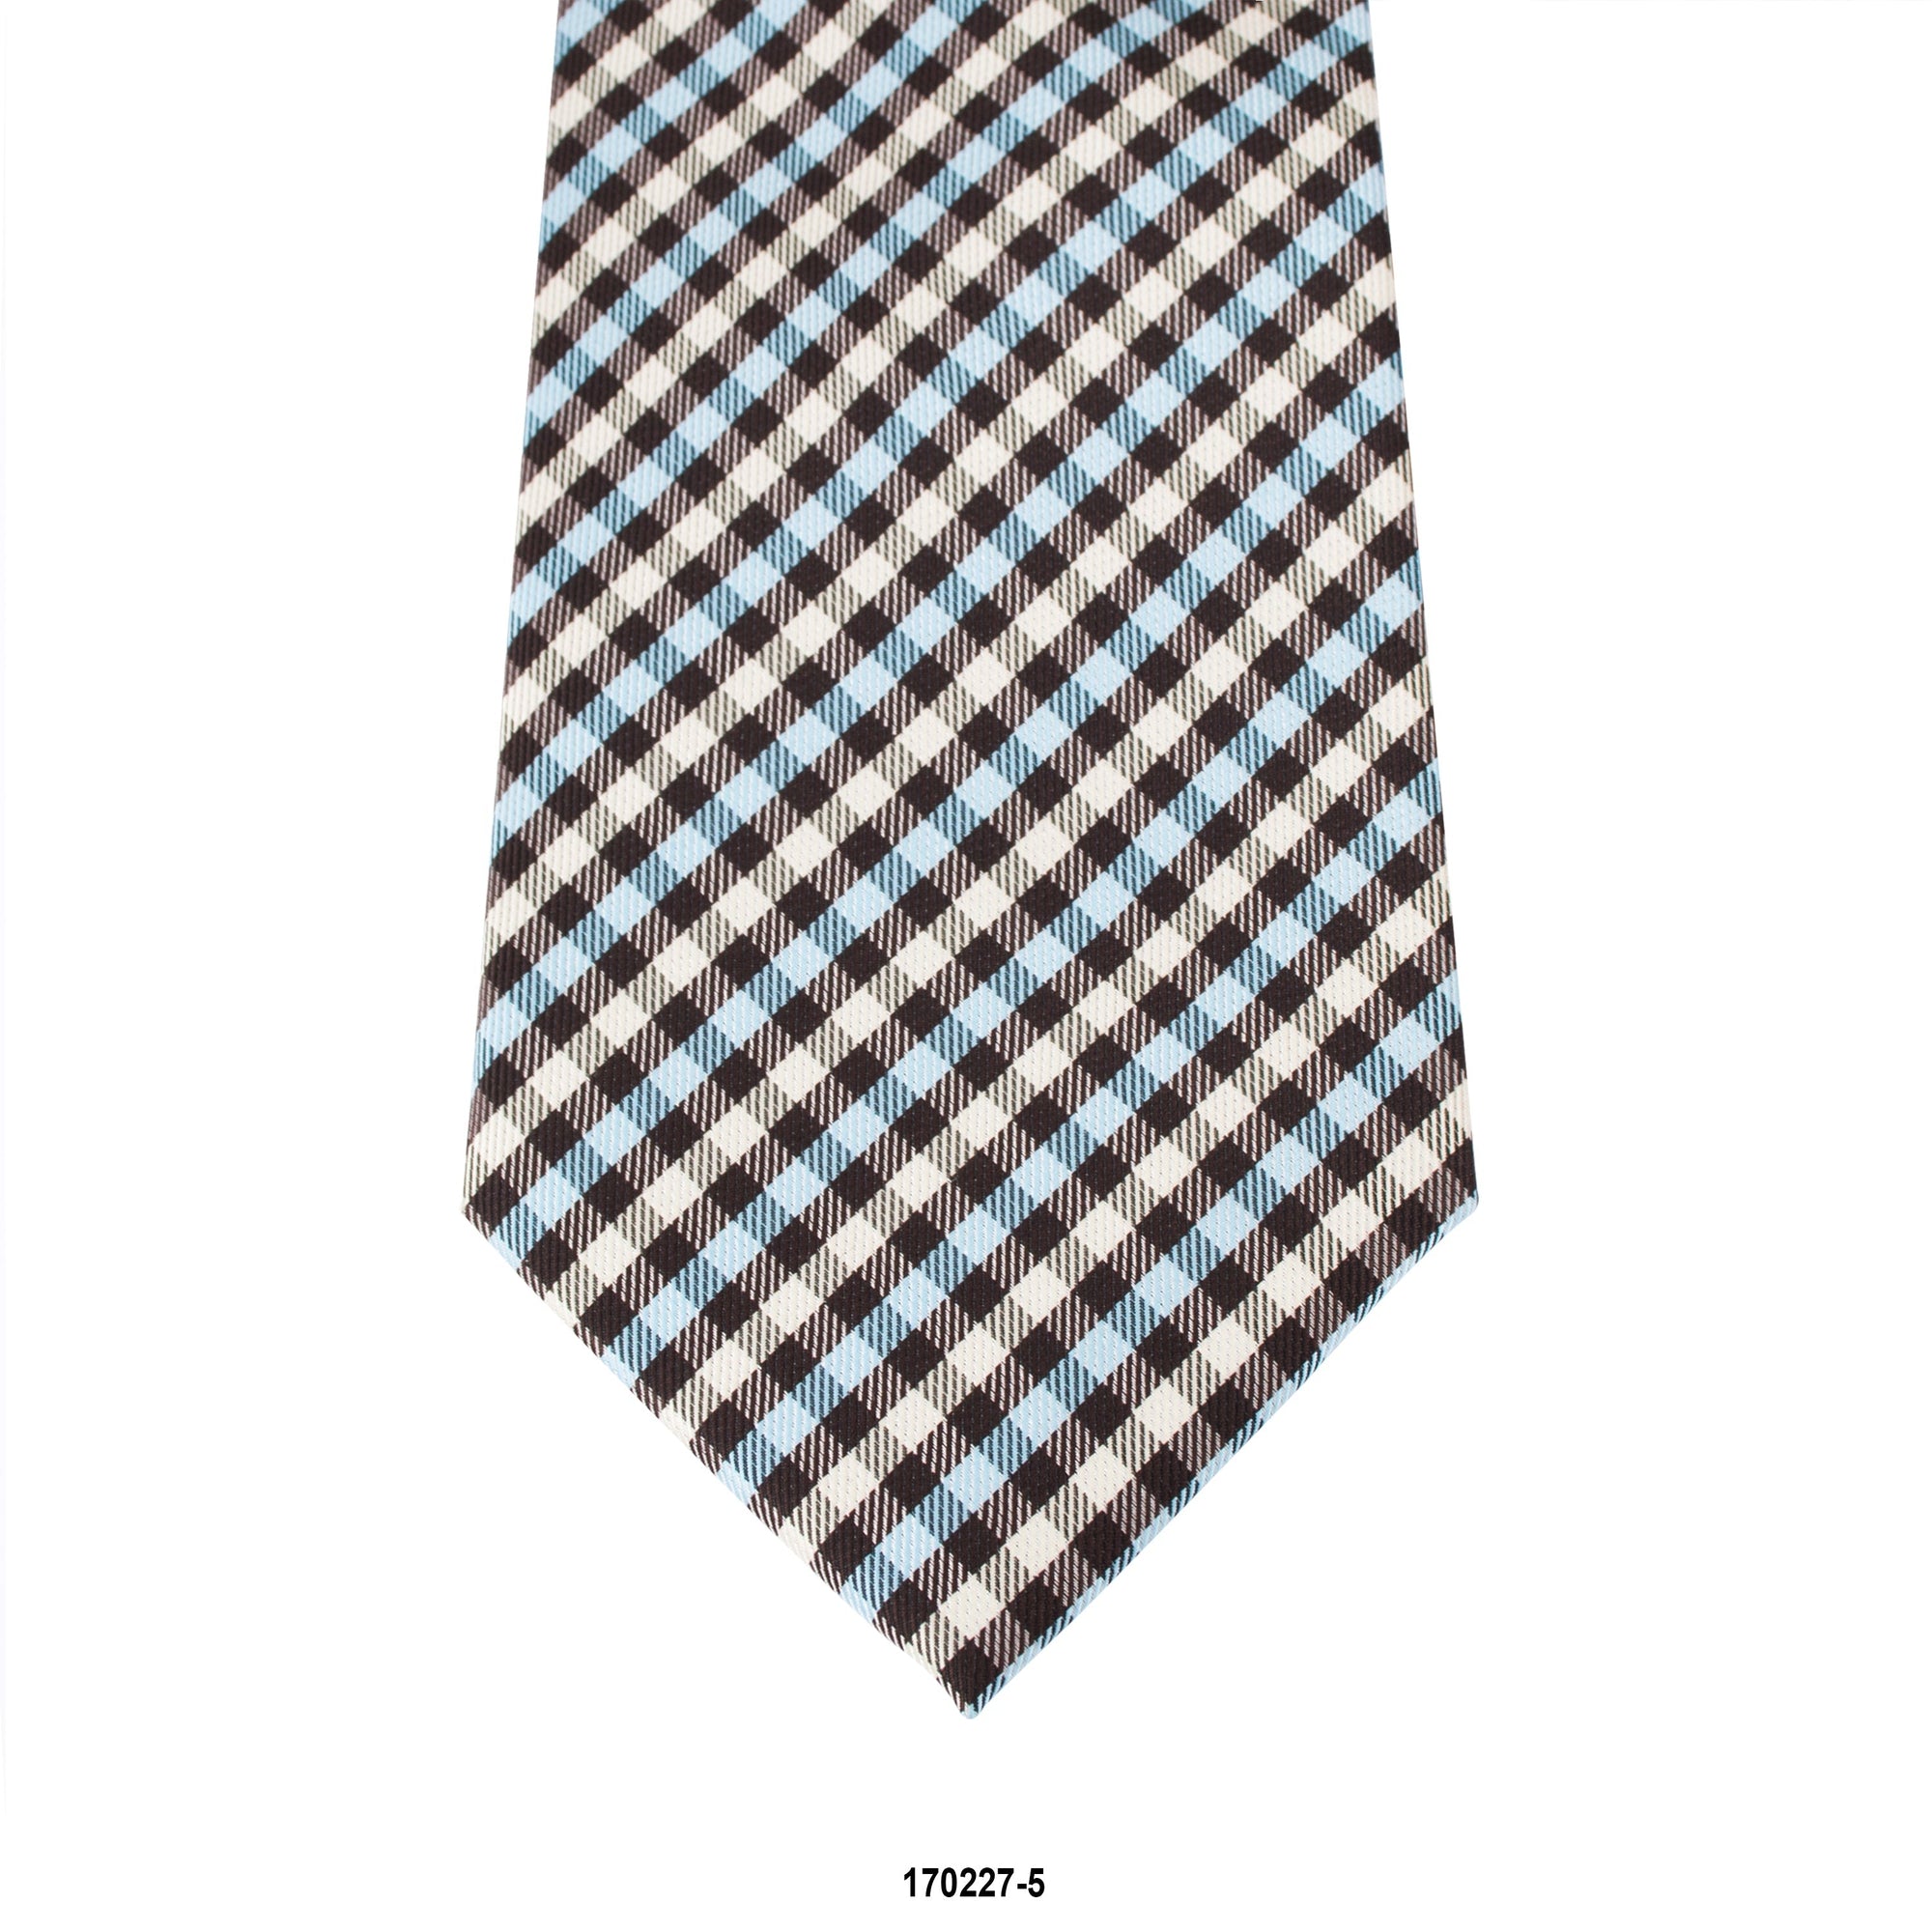 MarZthomson 8cm Gingham Checks Tie in Black, White and Blue A-Cufflinks.com.sg | Neckties.com.sg